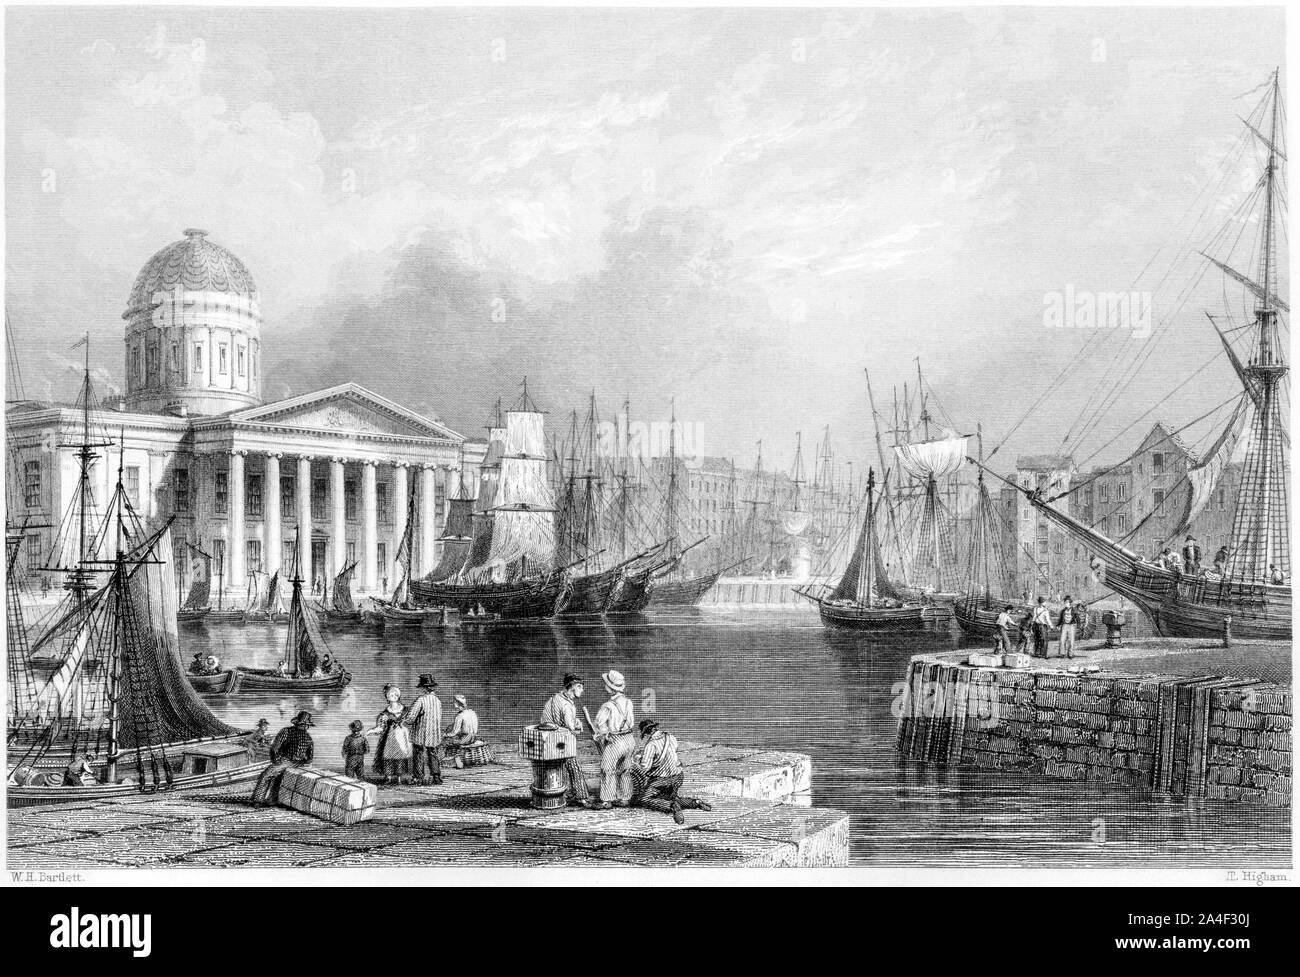 Eine Gravur von Canning Dock und Custom House, Liverpool UK, gescannt mit hoher Auflösung aus einem Buch, das 1842 gedruckt wurde. Für urheberrechtlich frei gehalten. Stockfoto